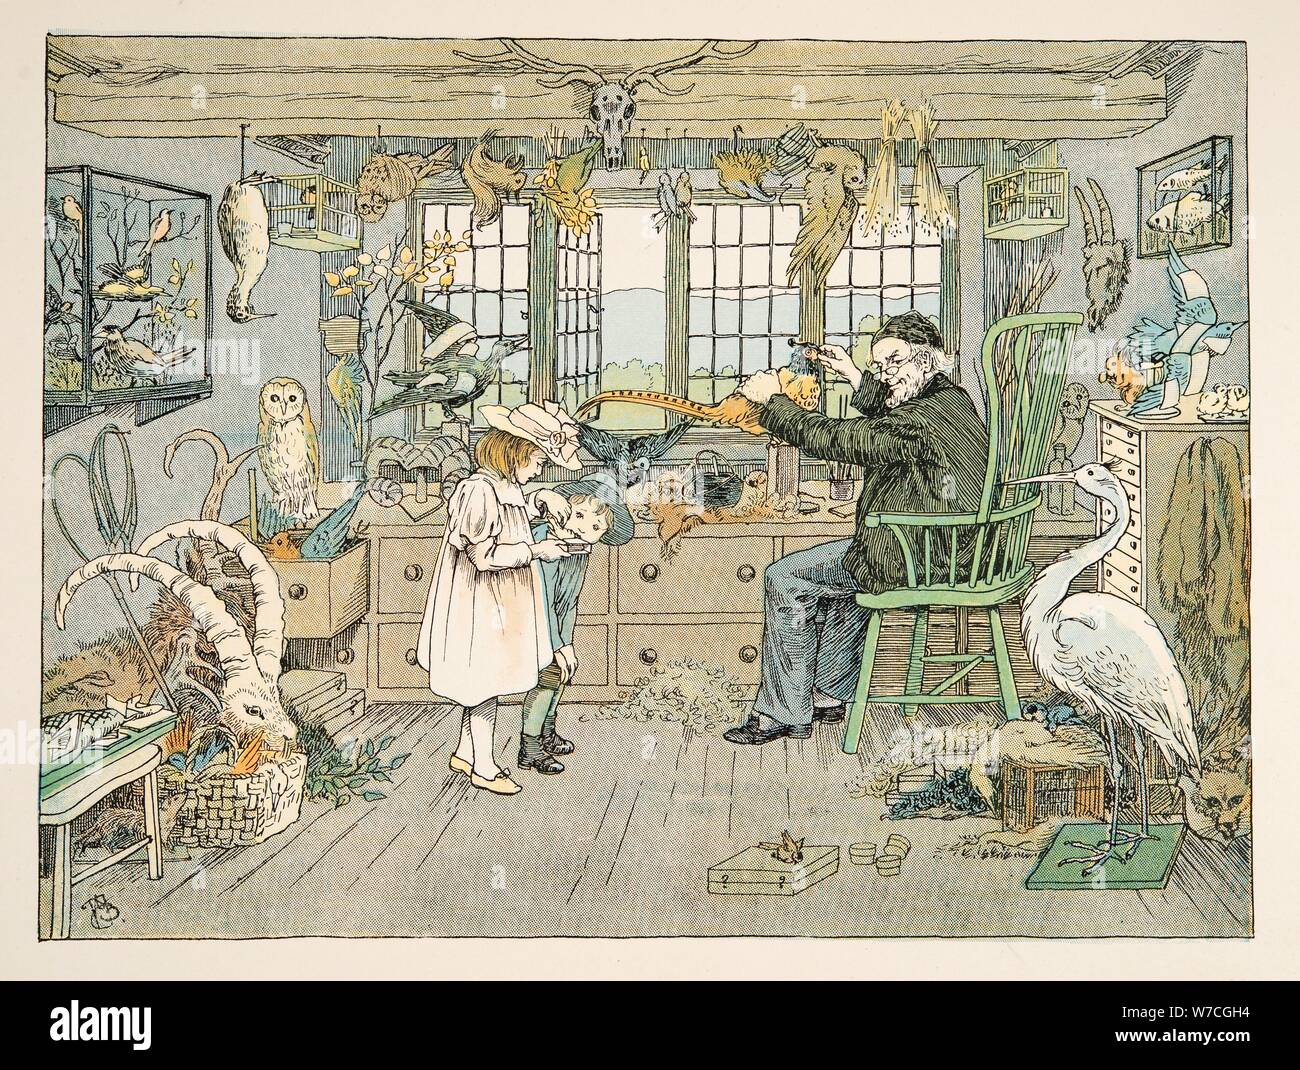 La rellenadora de aves, entre cuatro y veinte trabajadores, pub. Litografía de color (1900) Foto de stock